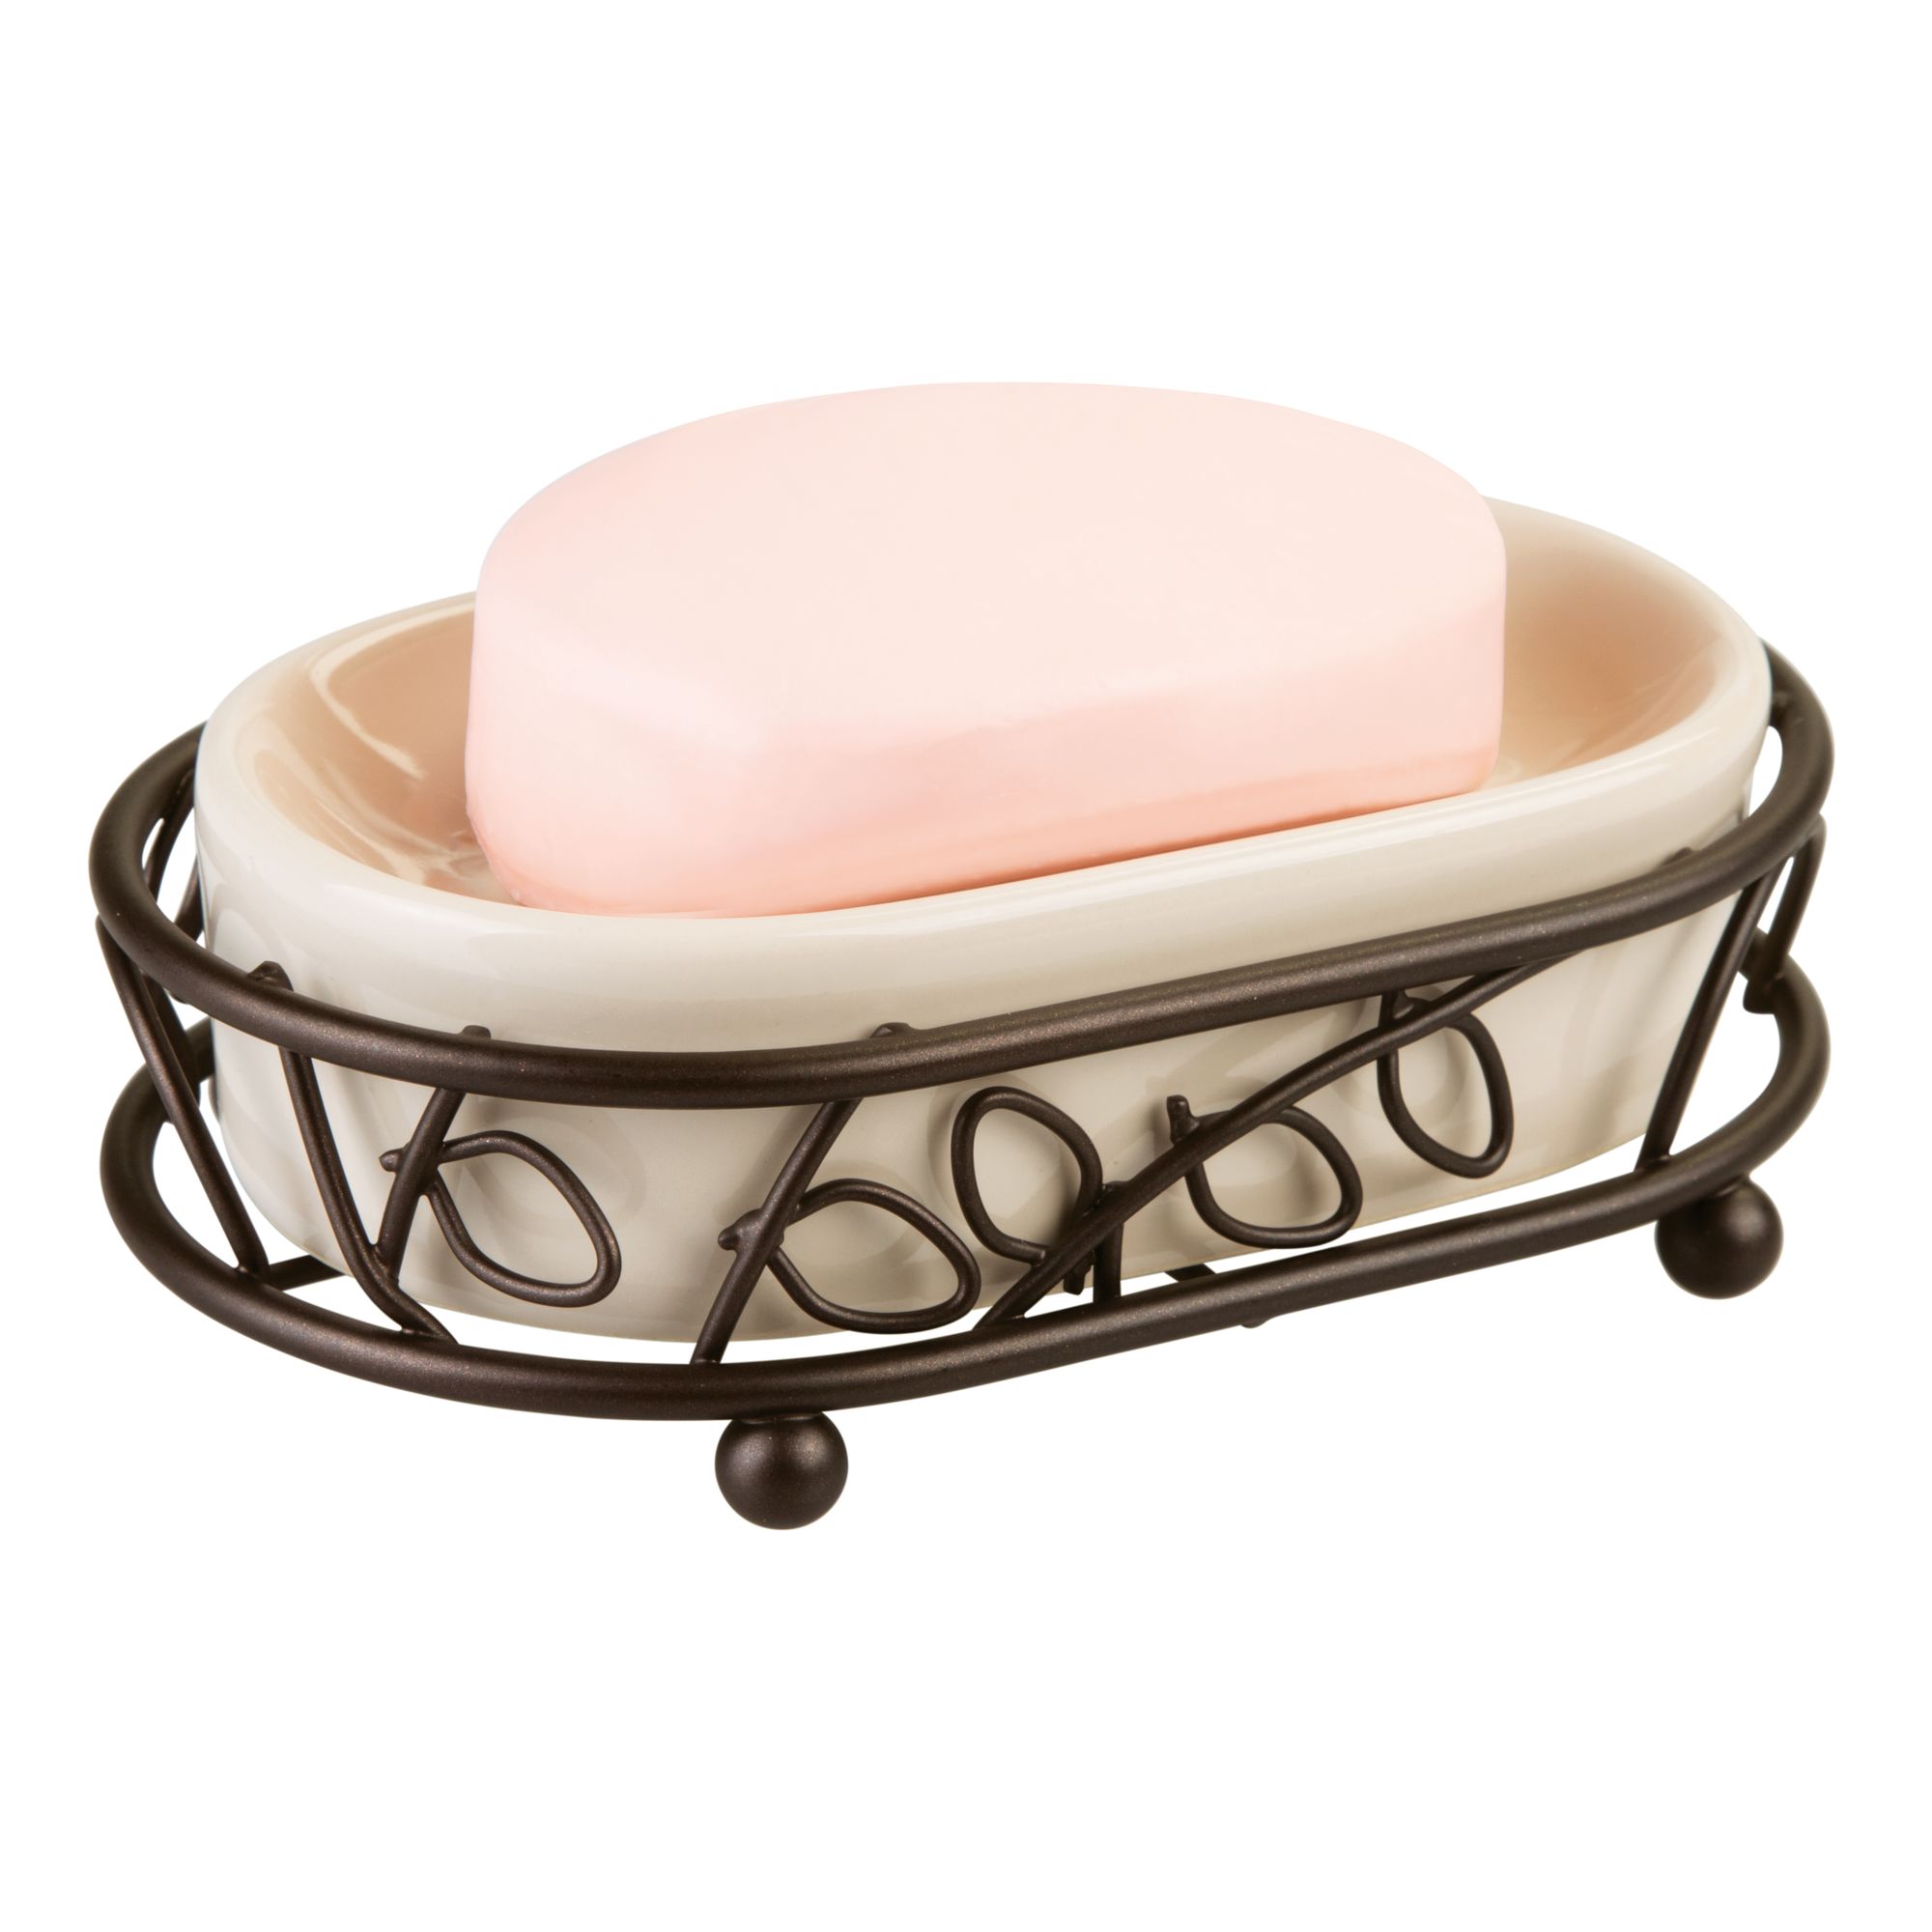 InterDesign Twigz Ceramic Soap Dish, Vanilla/Bronze - image 4 of 5